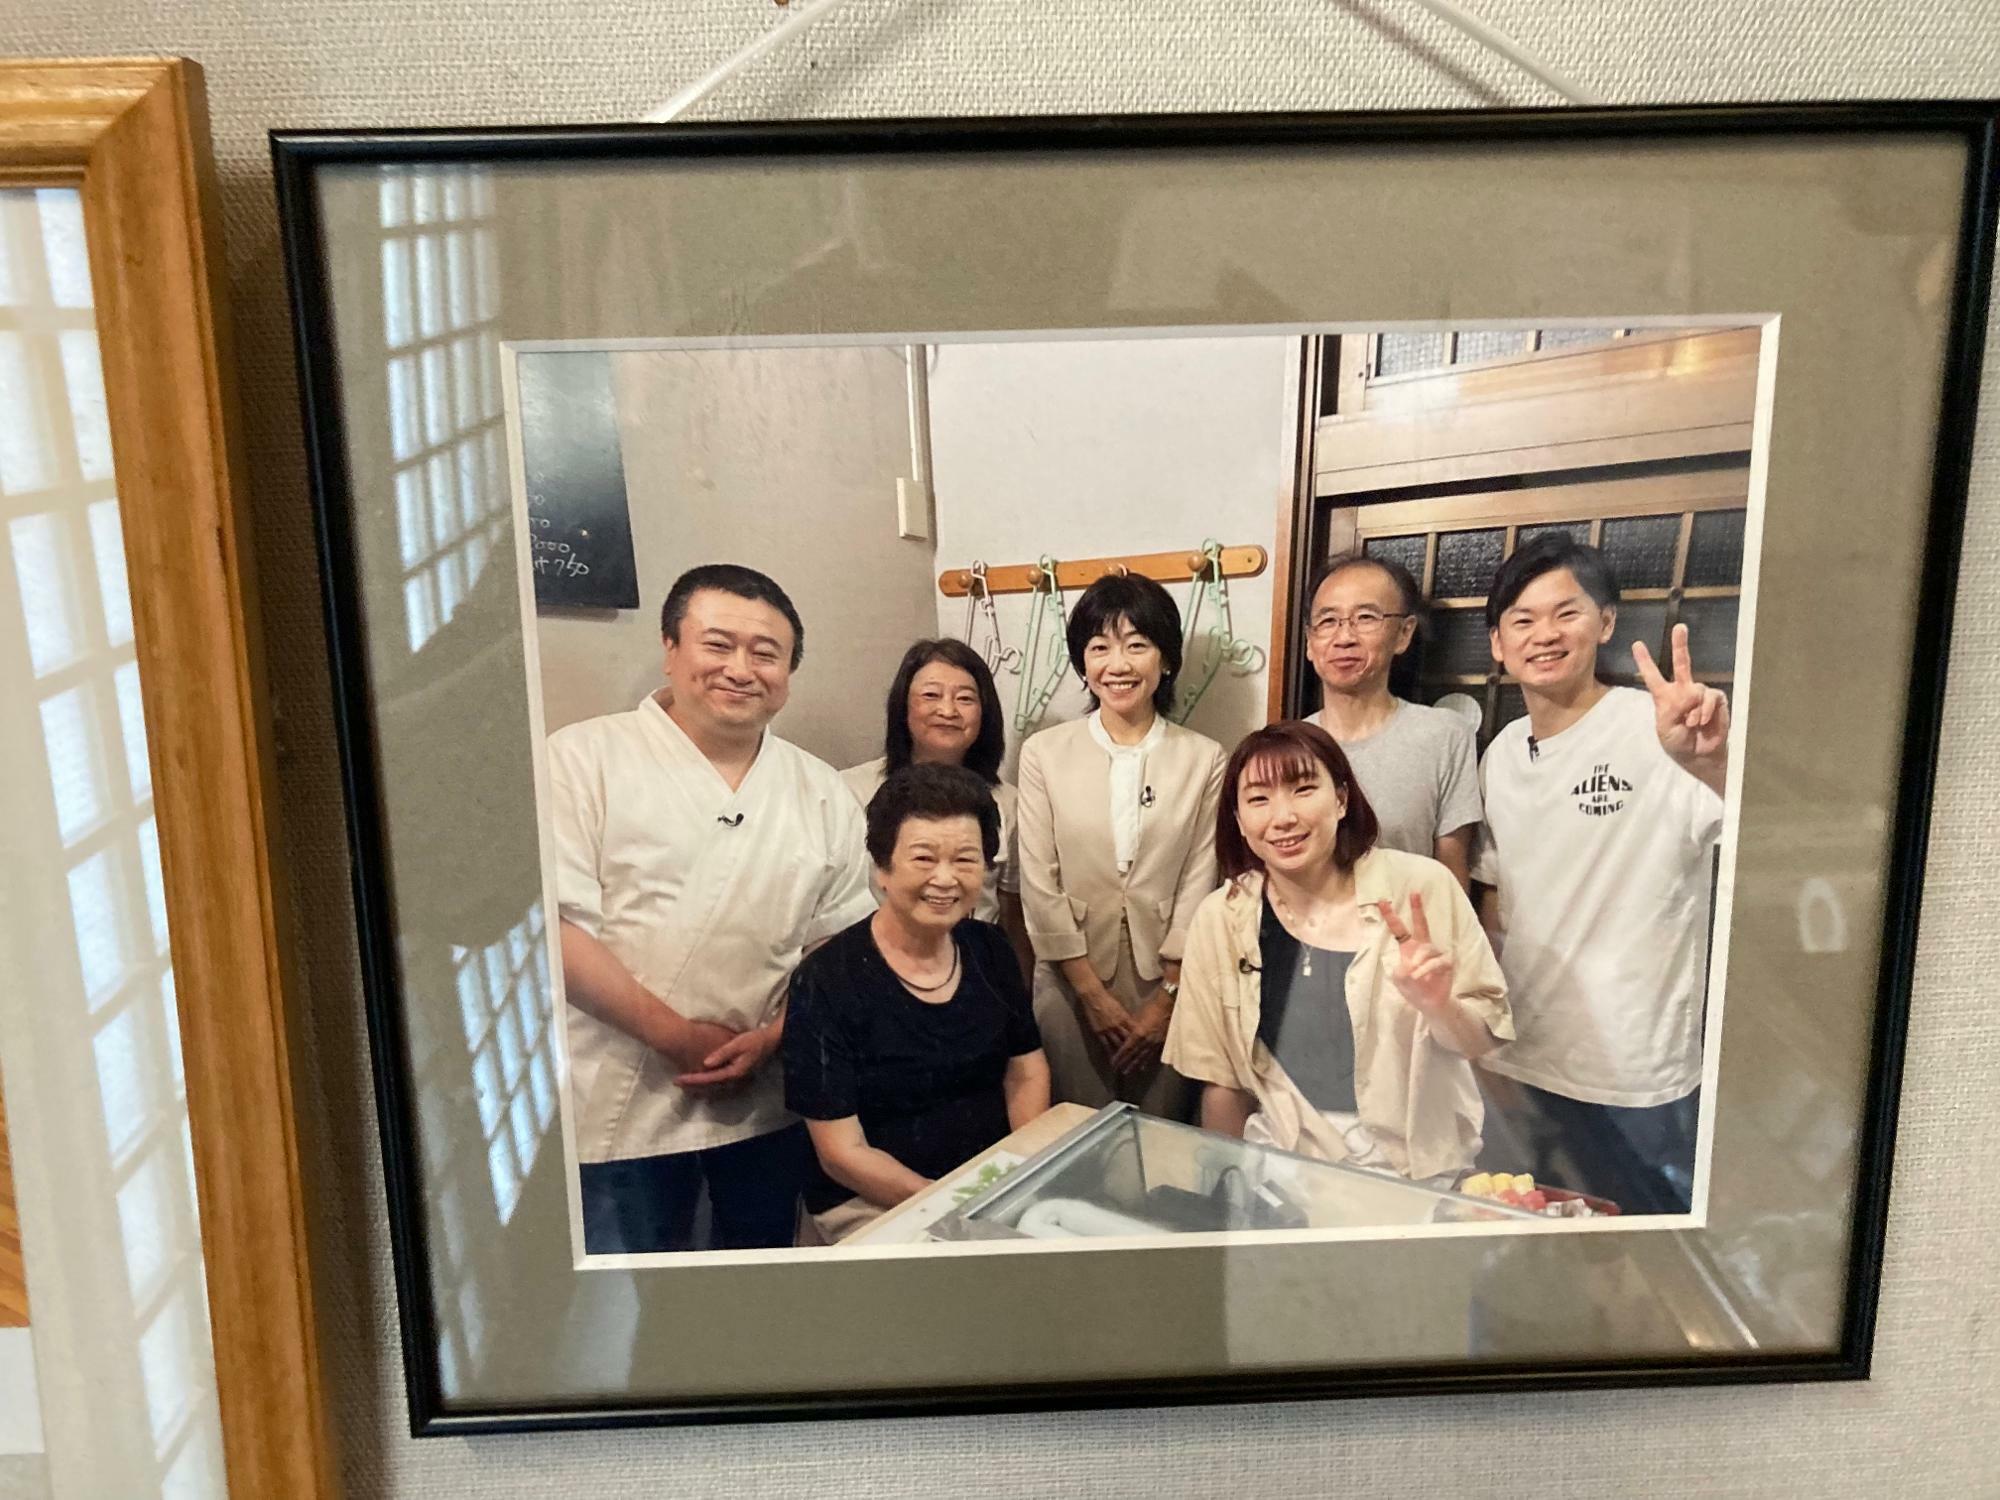 「ワタガシペア」の相方である東野有紗さんも交えた家族写真も。